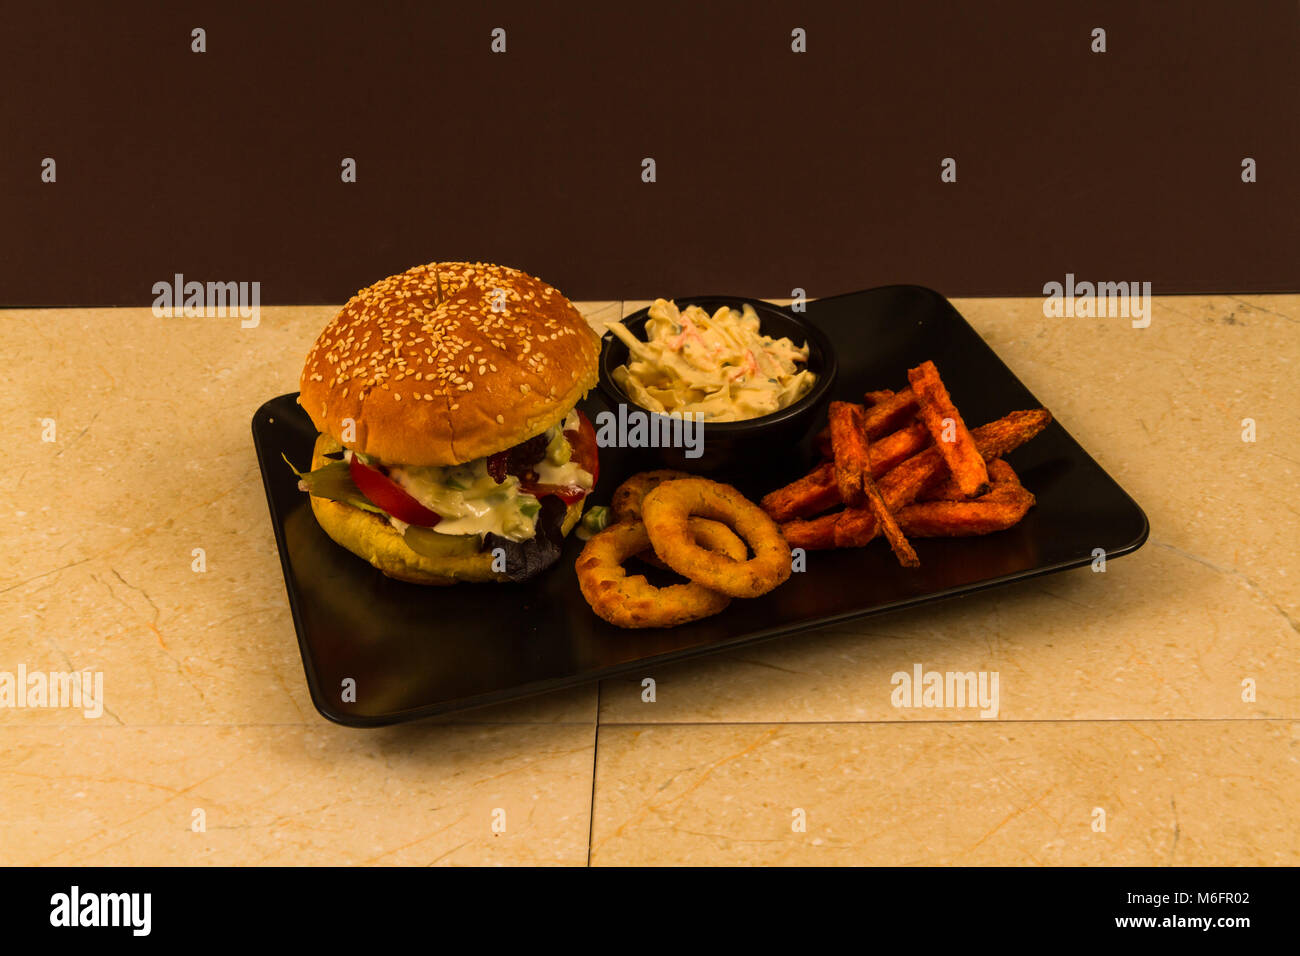 Carni bovine Gourmet Burger, con insalata, blu salsa al formaggio, patata dolce patate fritte, anelli di cipolla e coleslaw Foto Stock